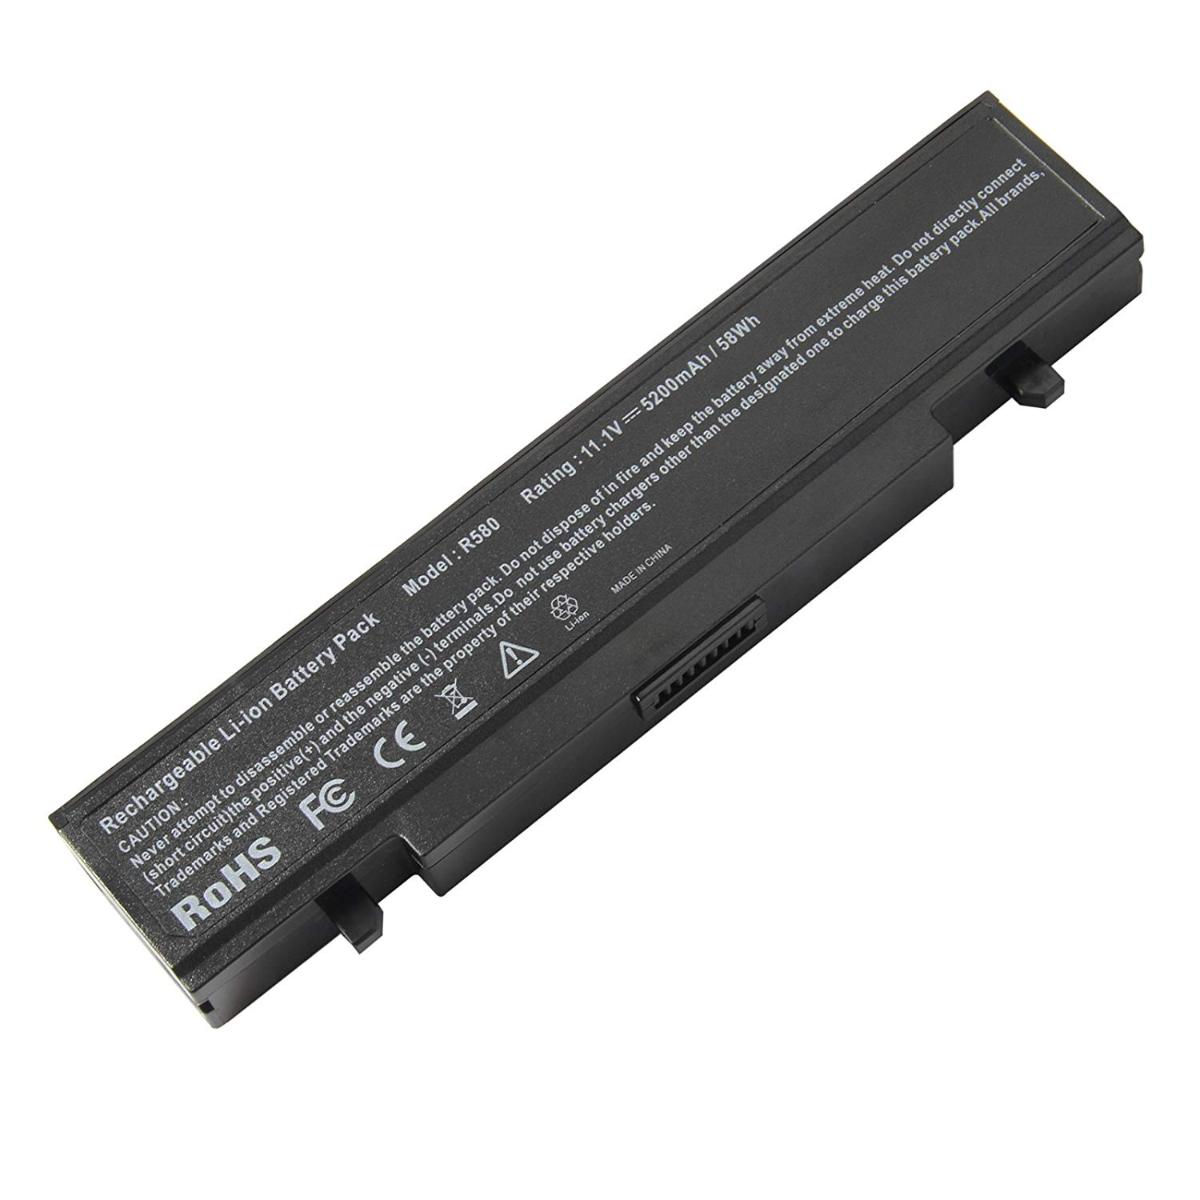 Μπαταρία Laptop - Battery for Samsung NP-R518 OEM υψηλής ποιότητας - high quality (Κωδ.
1-BAT0060(4.4Ah))